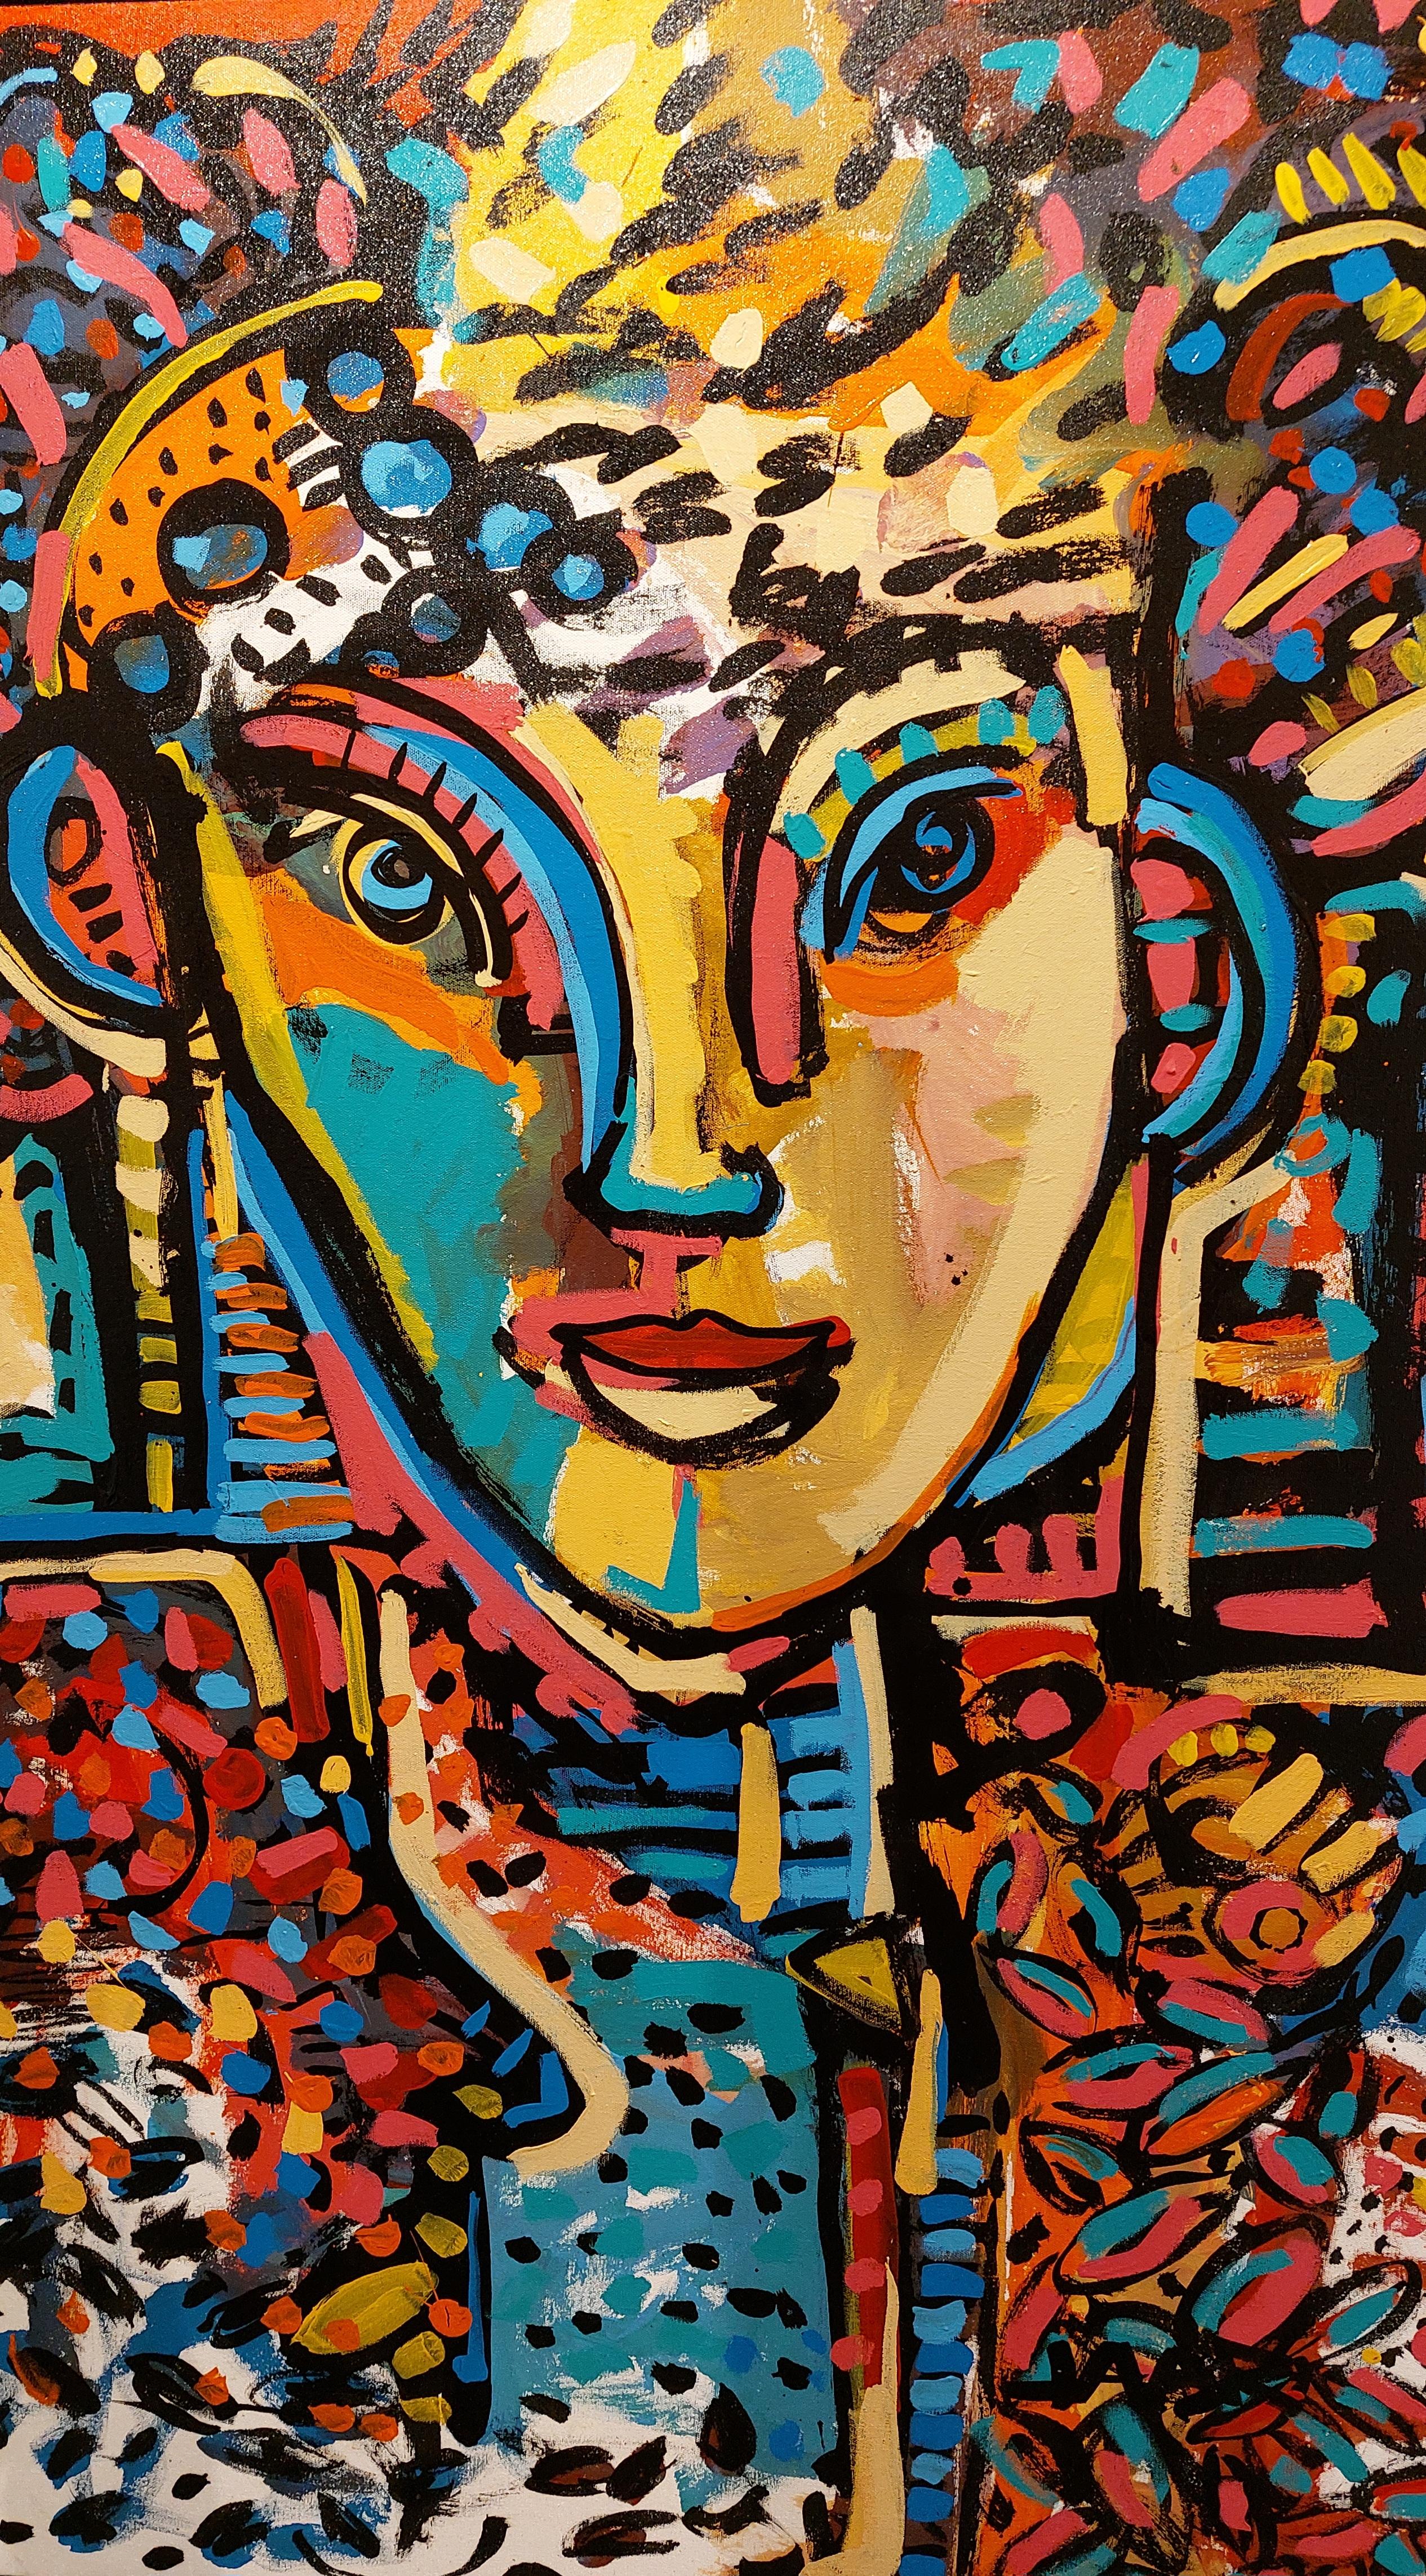 ARENAS, acrylic on canvas, 150 cm x 100 cm